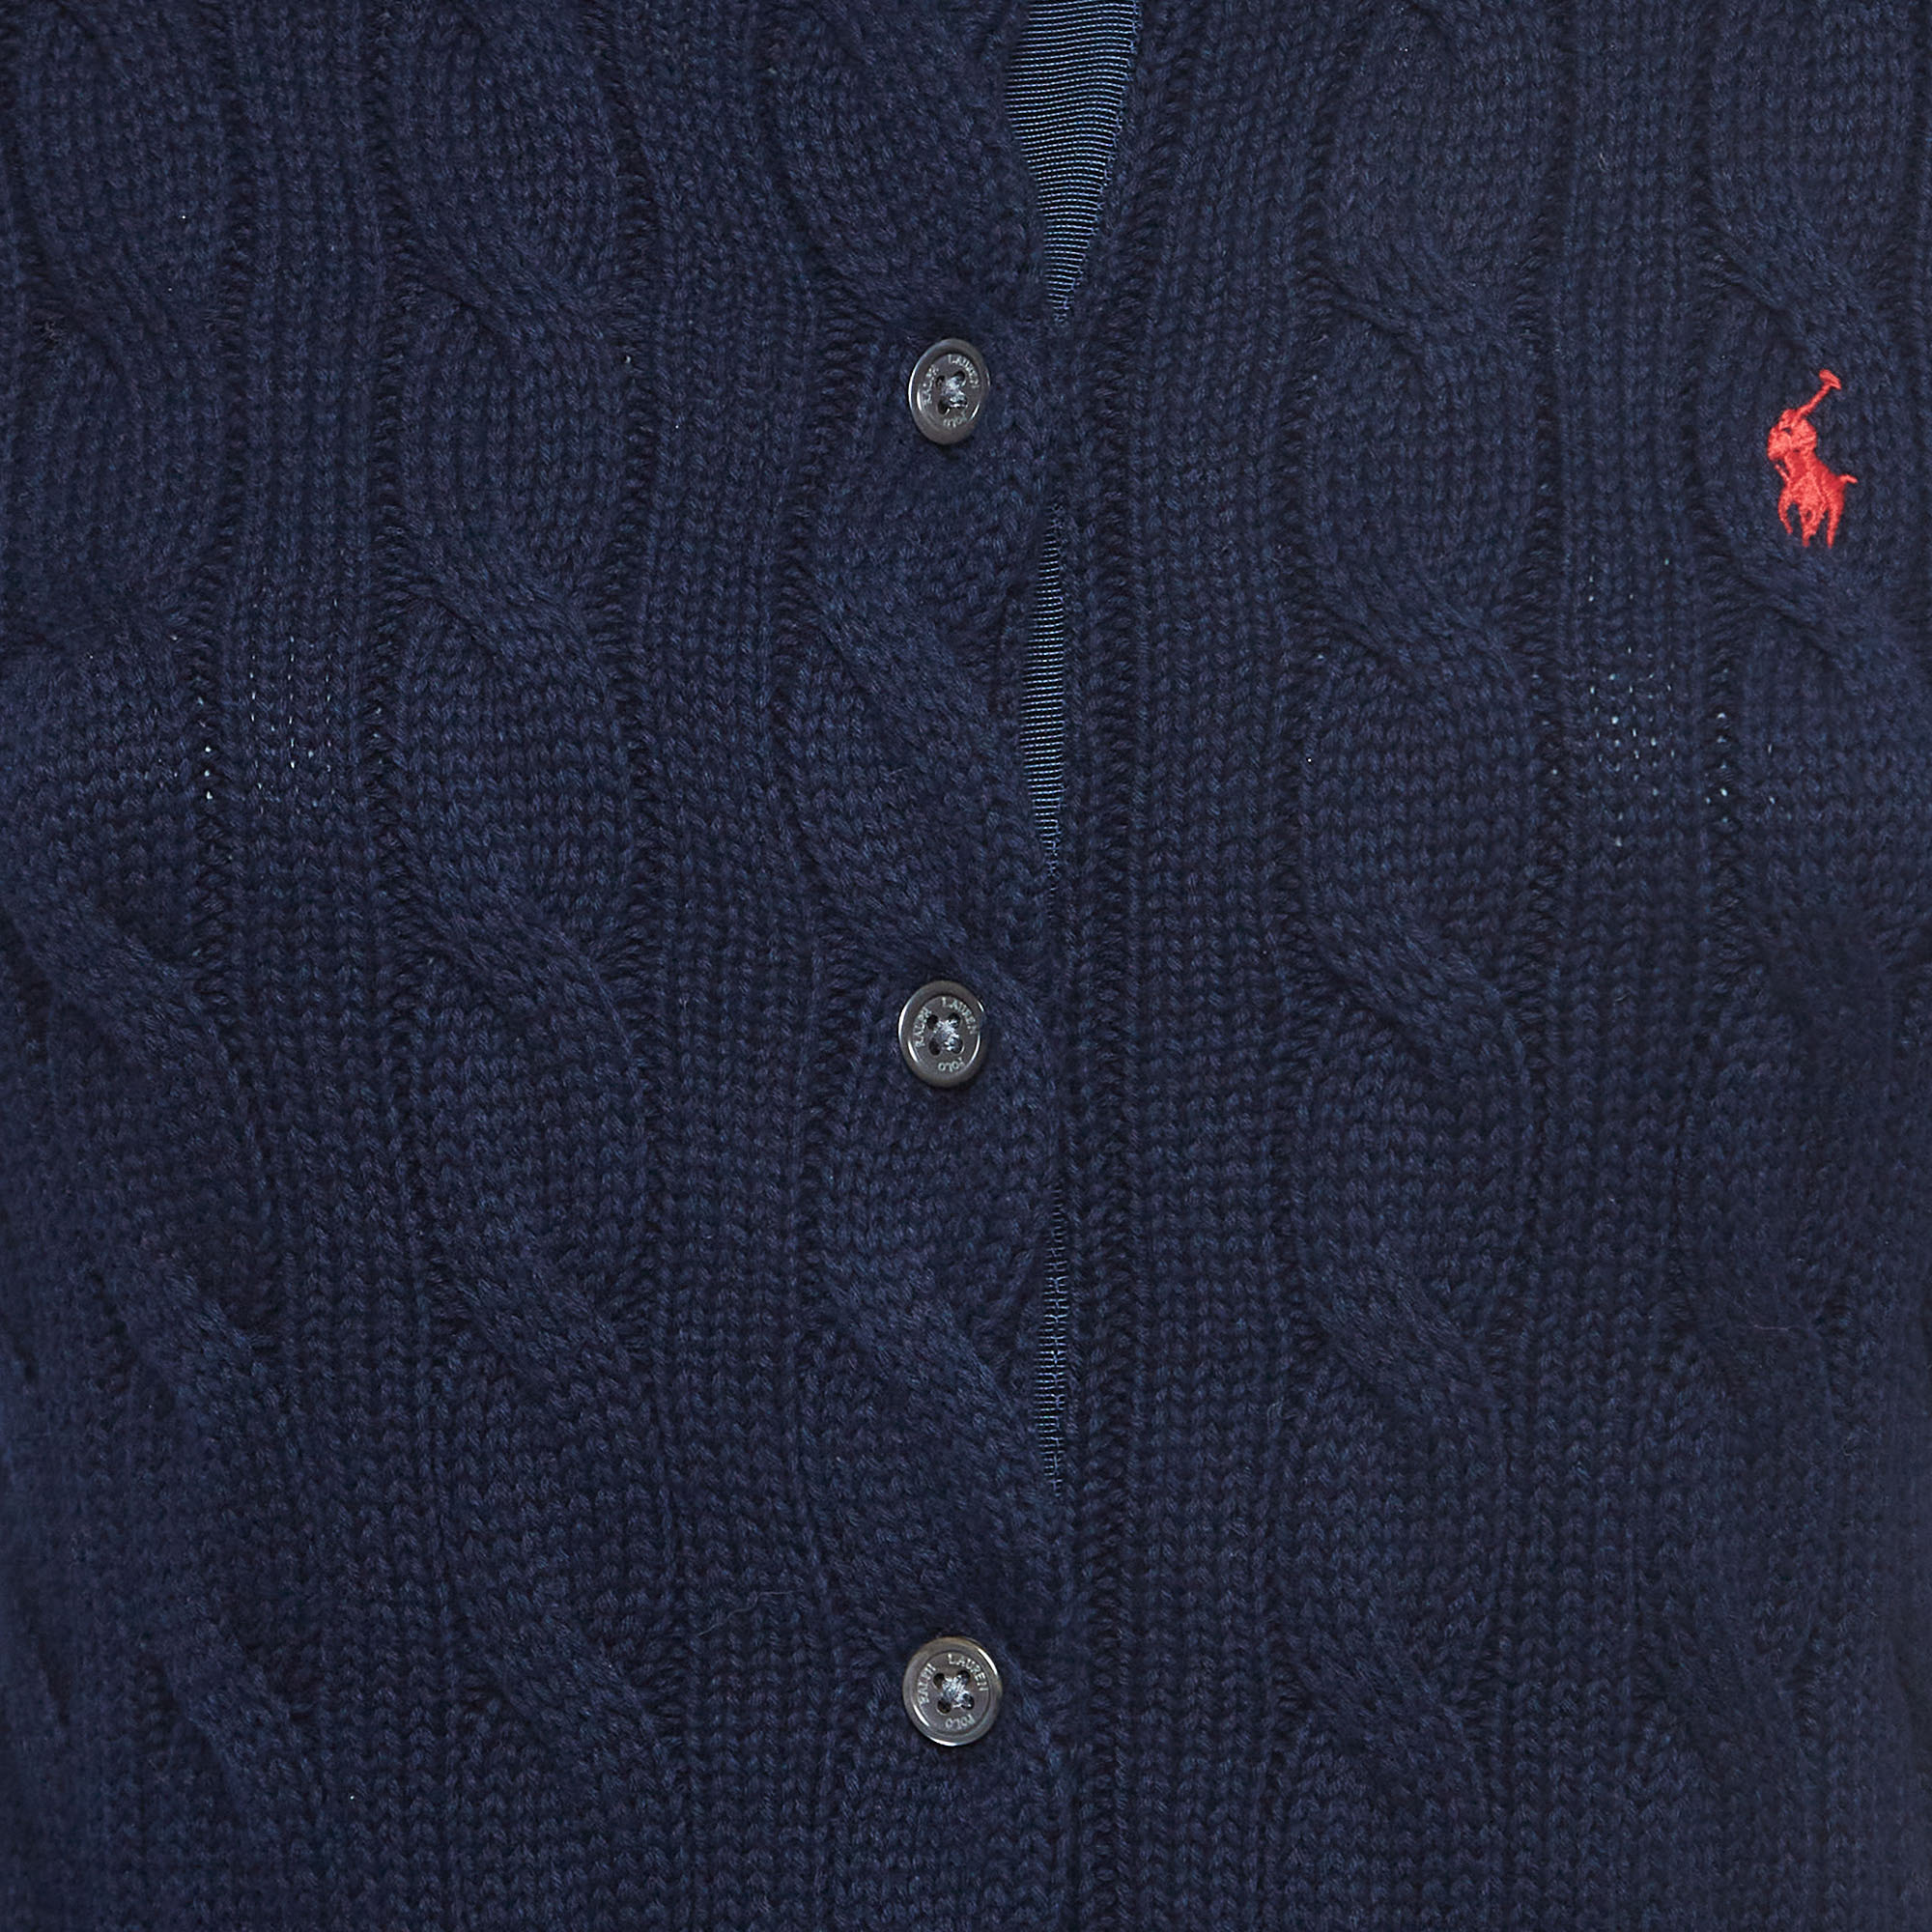 Polo Ralph Lauren Navy Blue Cable-Knit Cotton Crewneck Cardigan